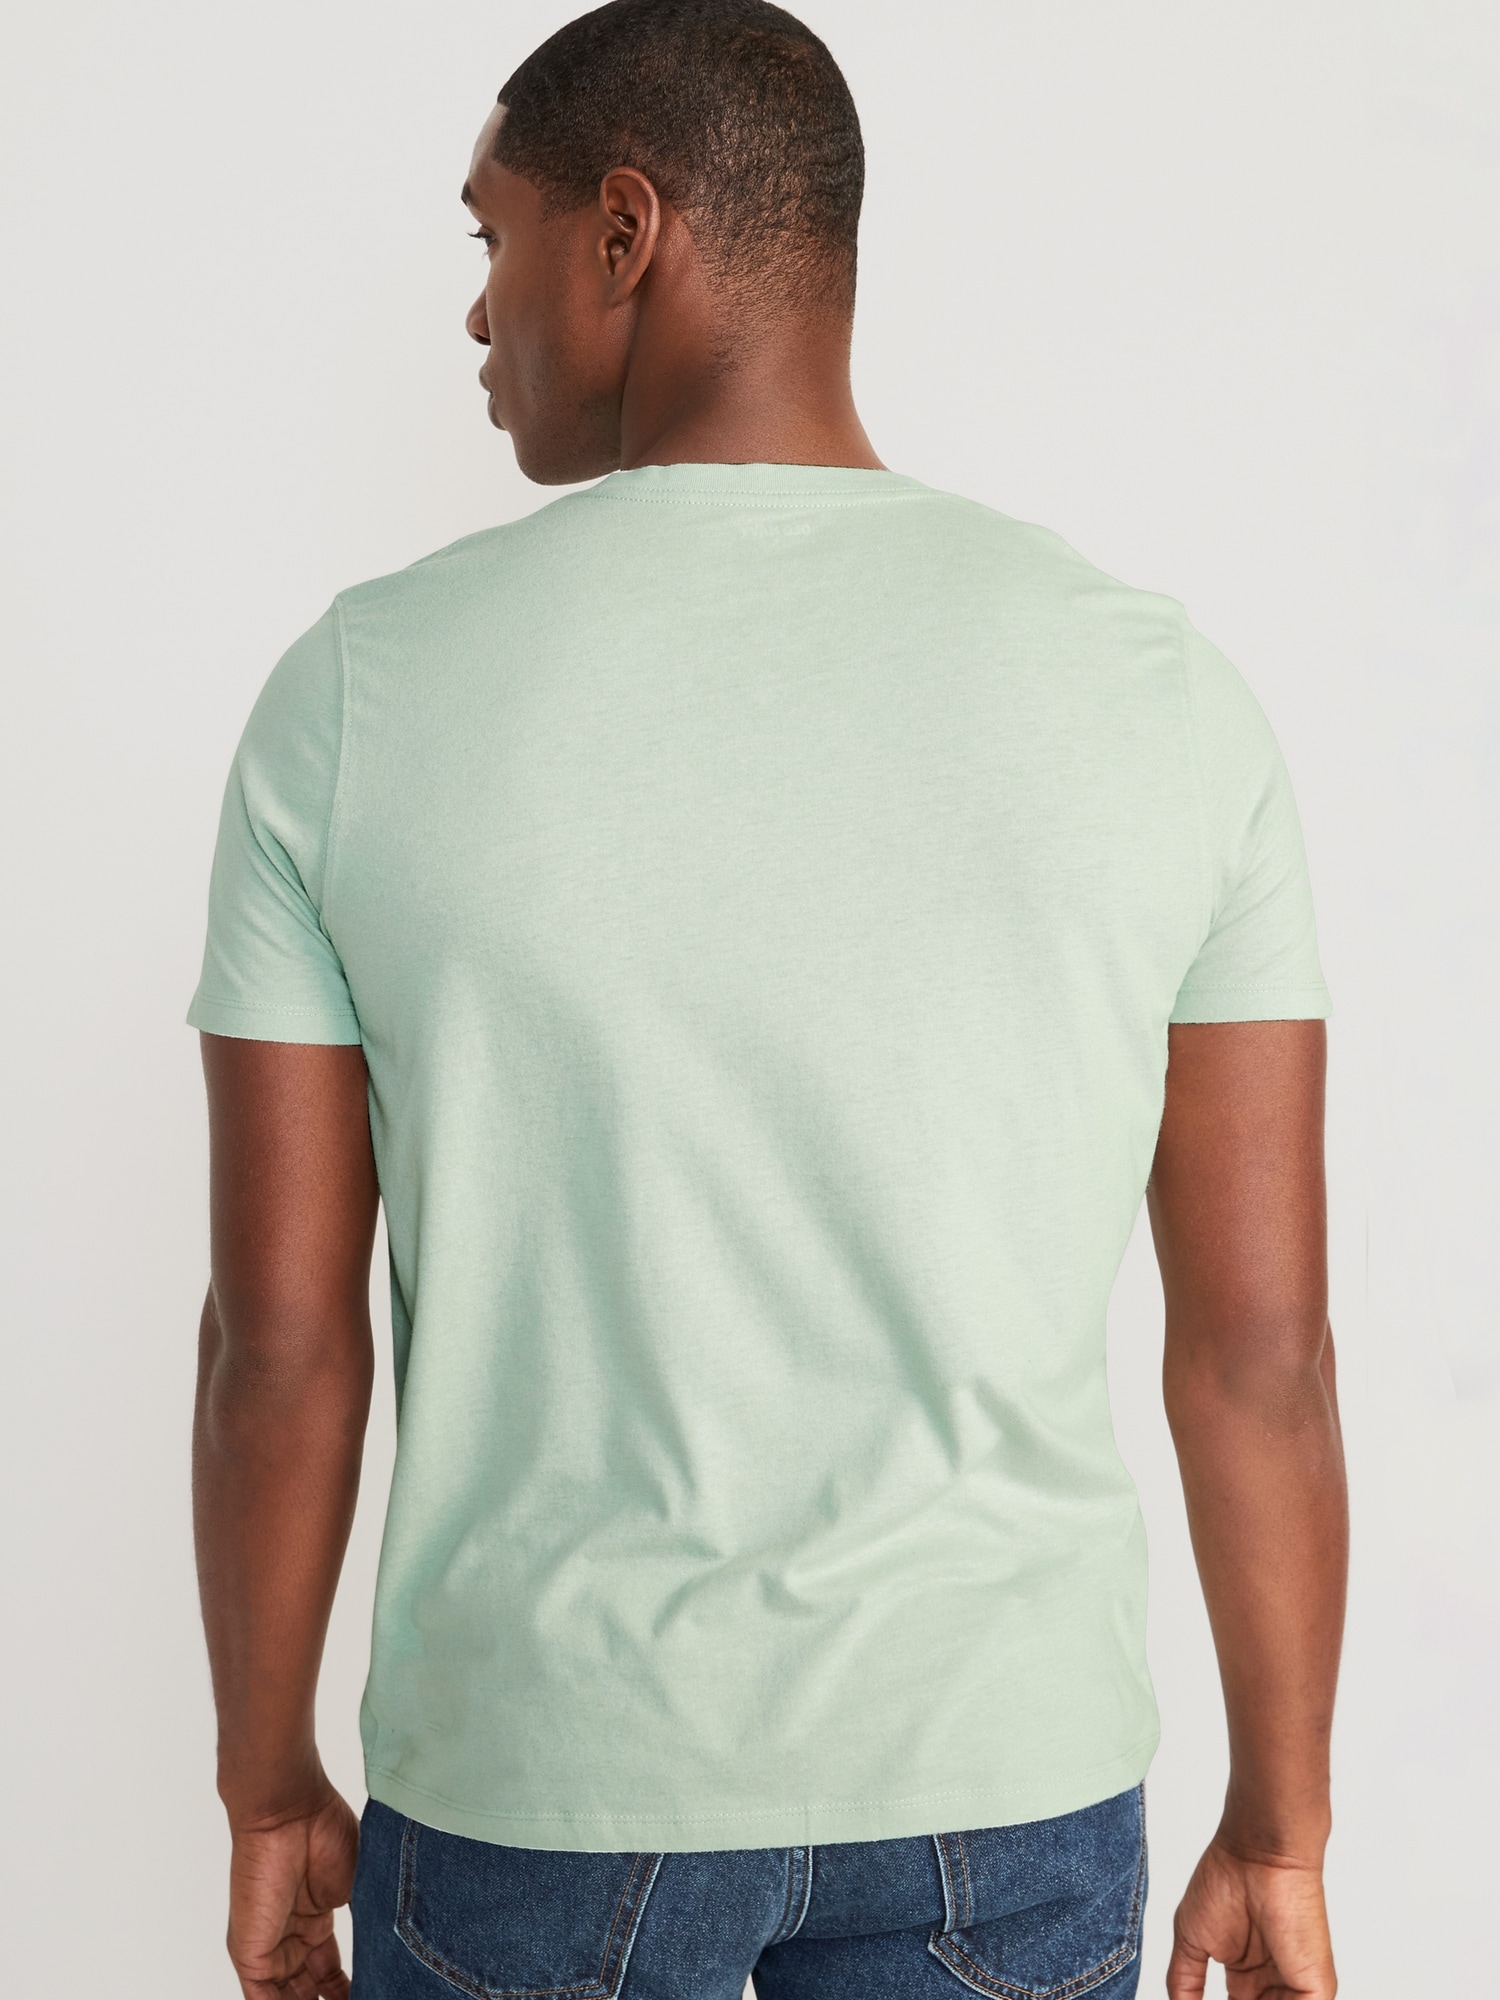 Soft-Washed V-Neck T-Shirt for Men | Old Navy